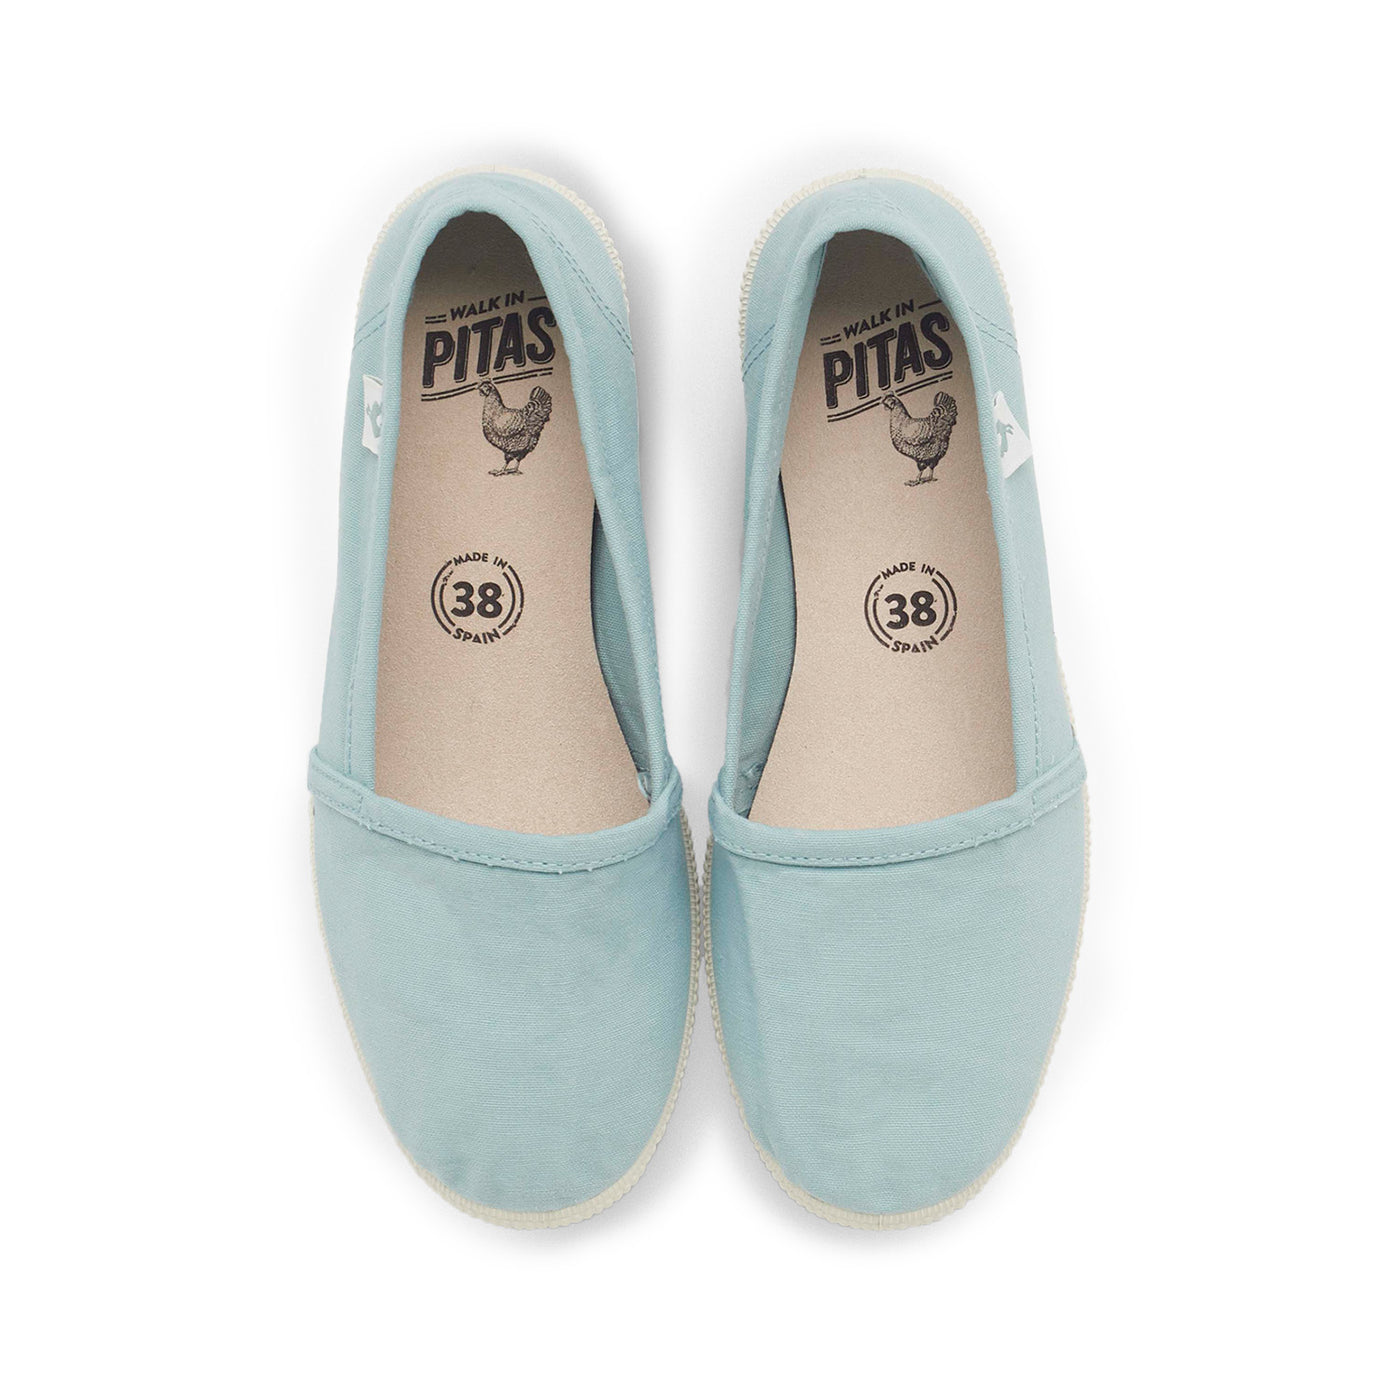 Original Pitas Beach Shoes in Aqua Blue